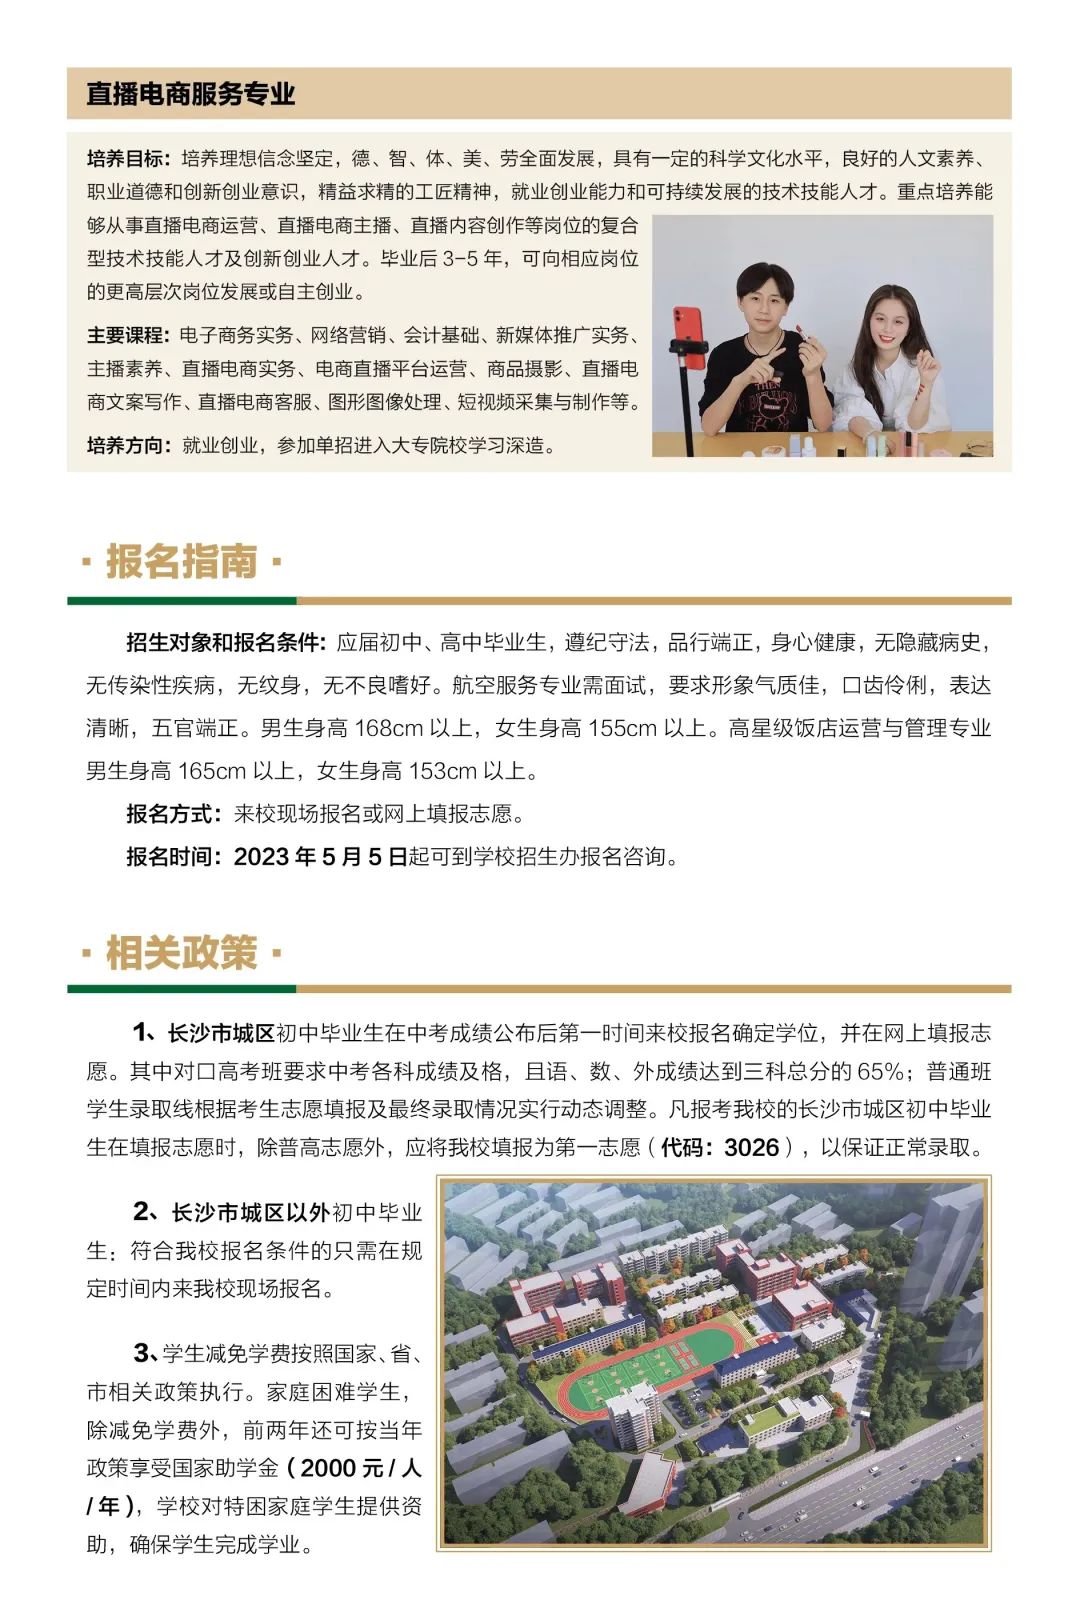 湖南省有色金属中等专业学校2023年招生简章